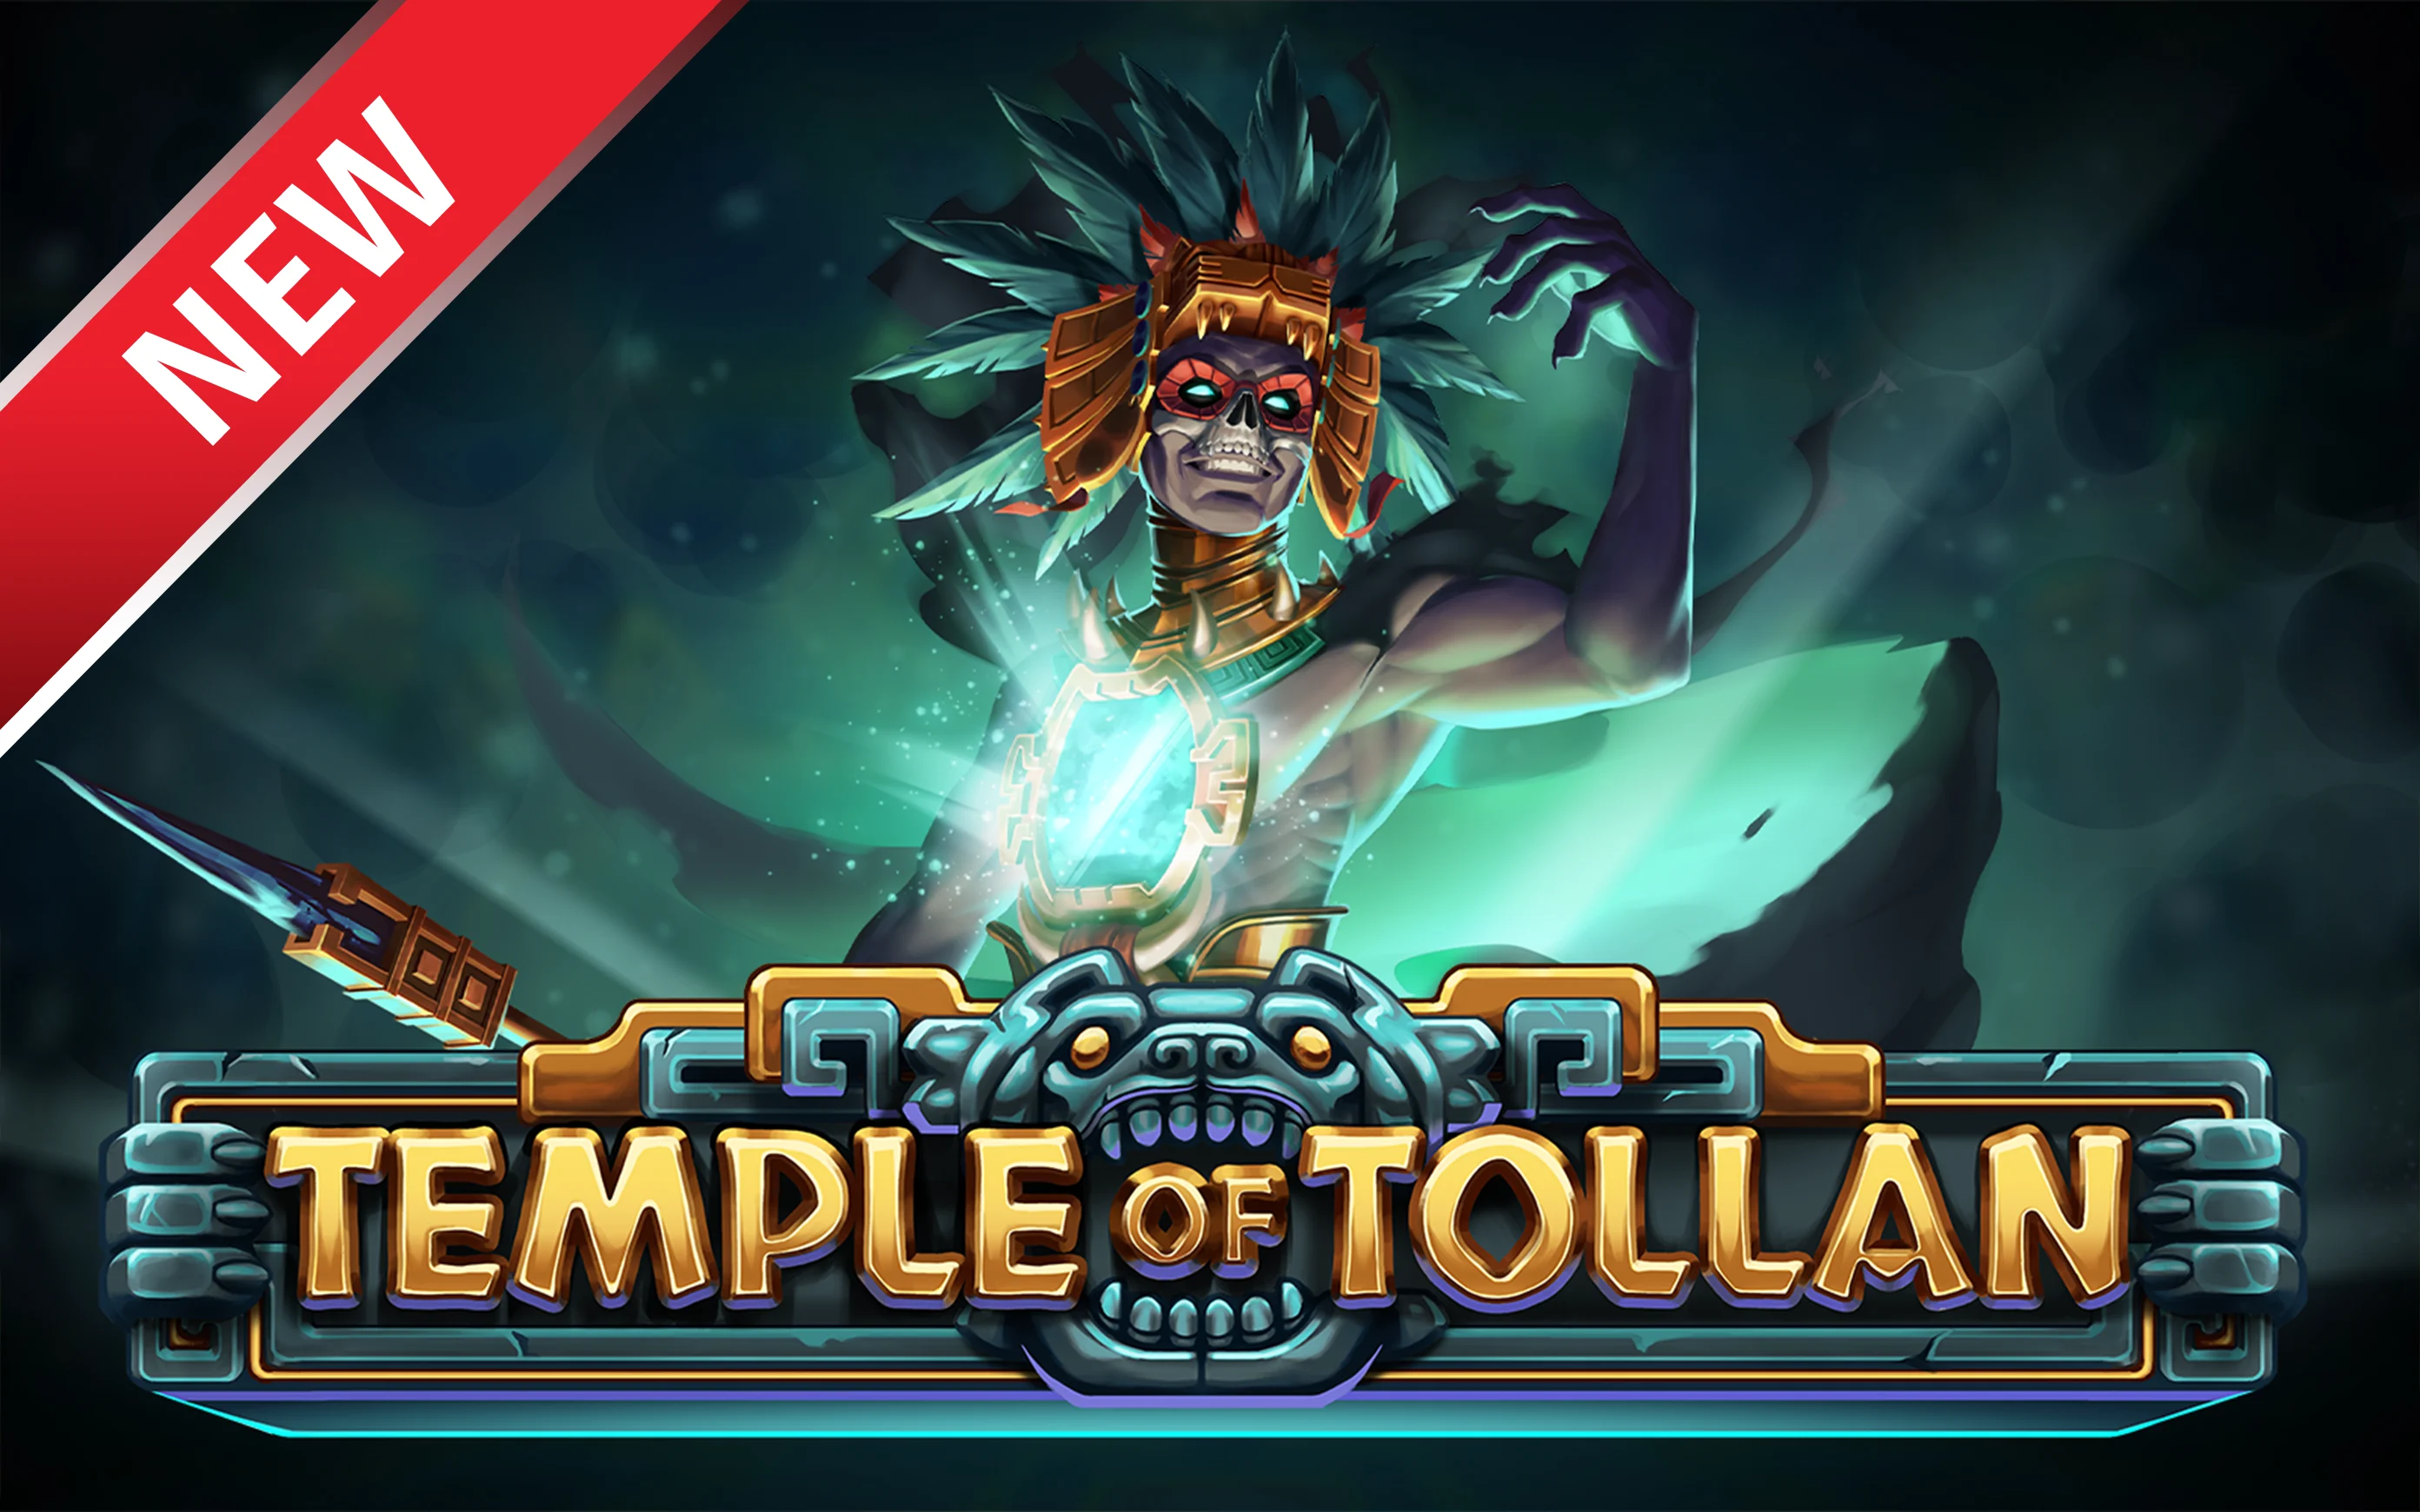 Joacă Temple of Tollan în cazinoul online Starcasino.be